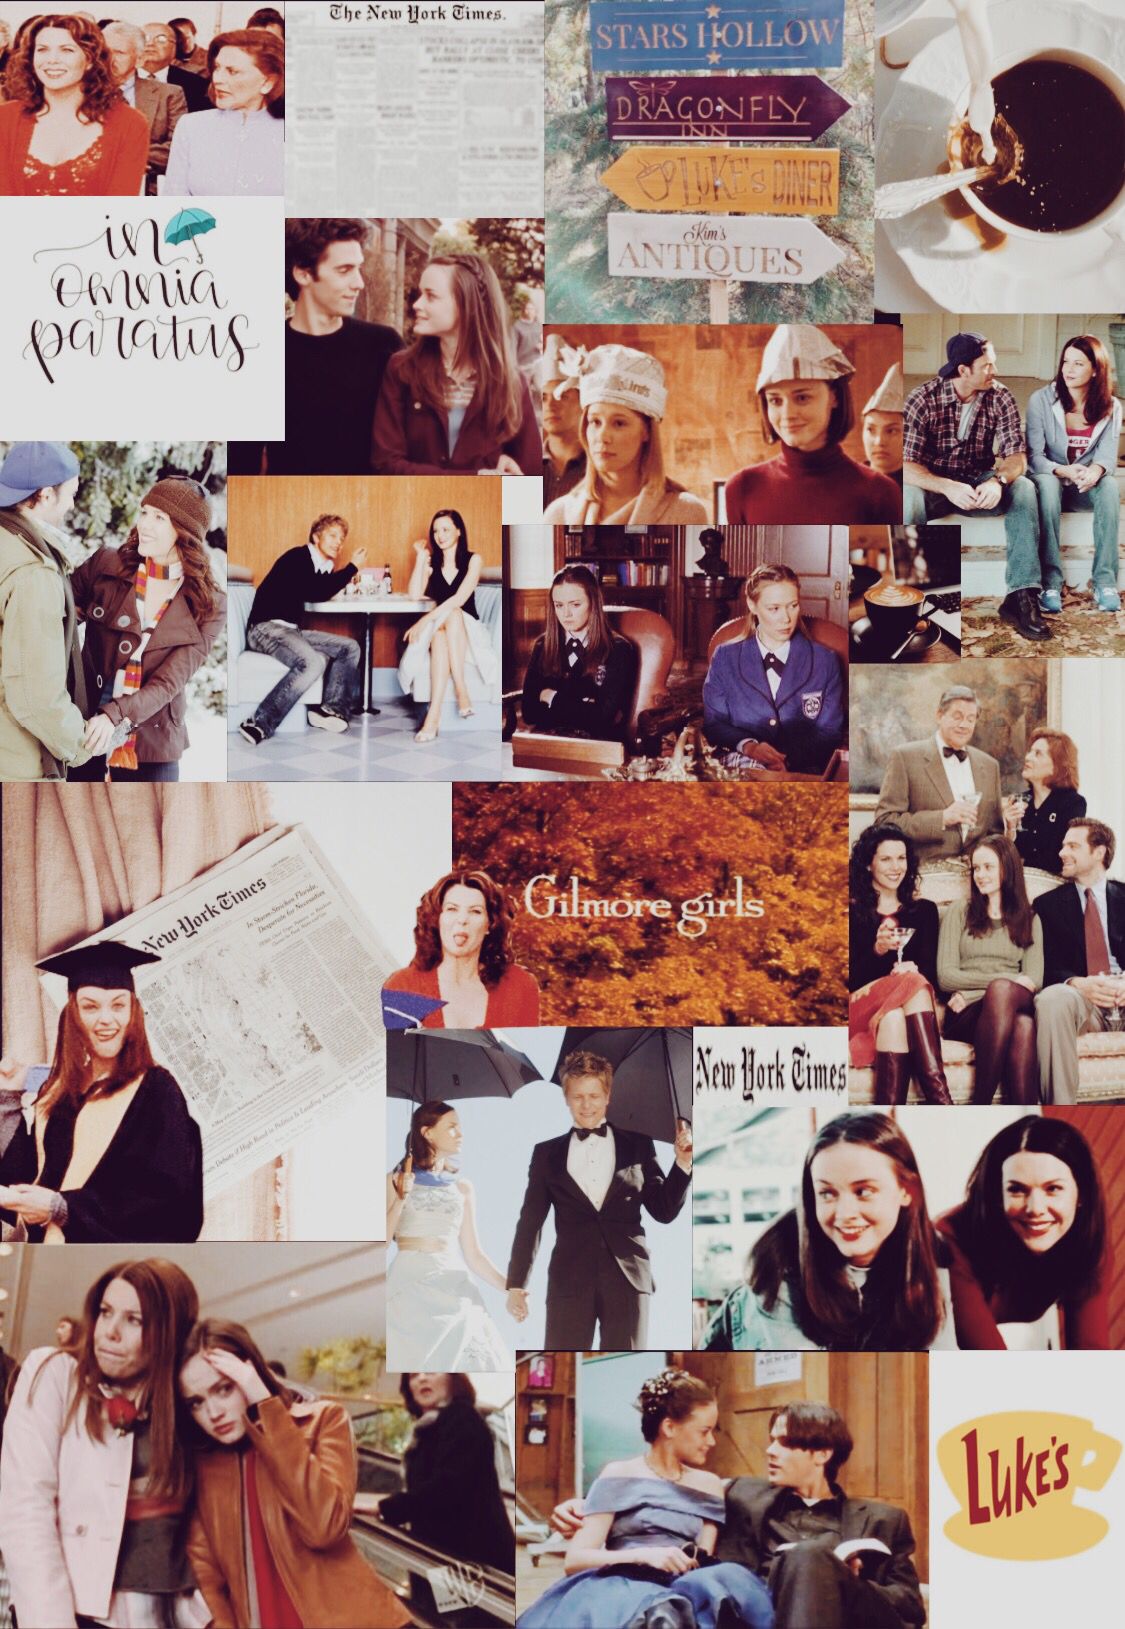 gilmore girls wallpaper. Girlmore girls, Gilmore girls, Gilmore girls poster